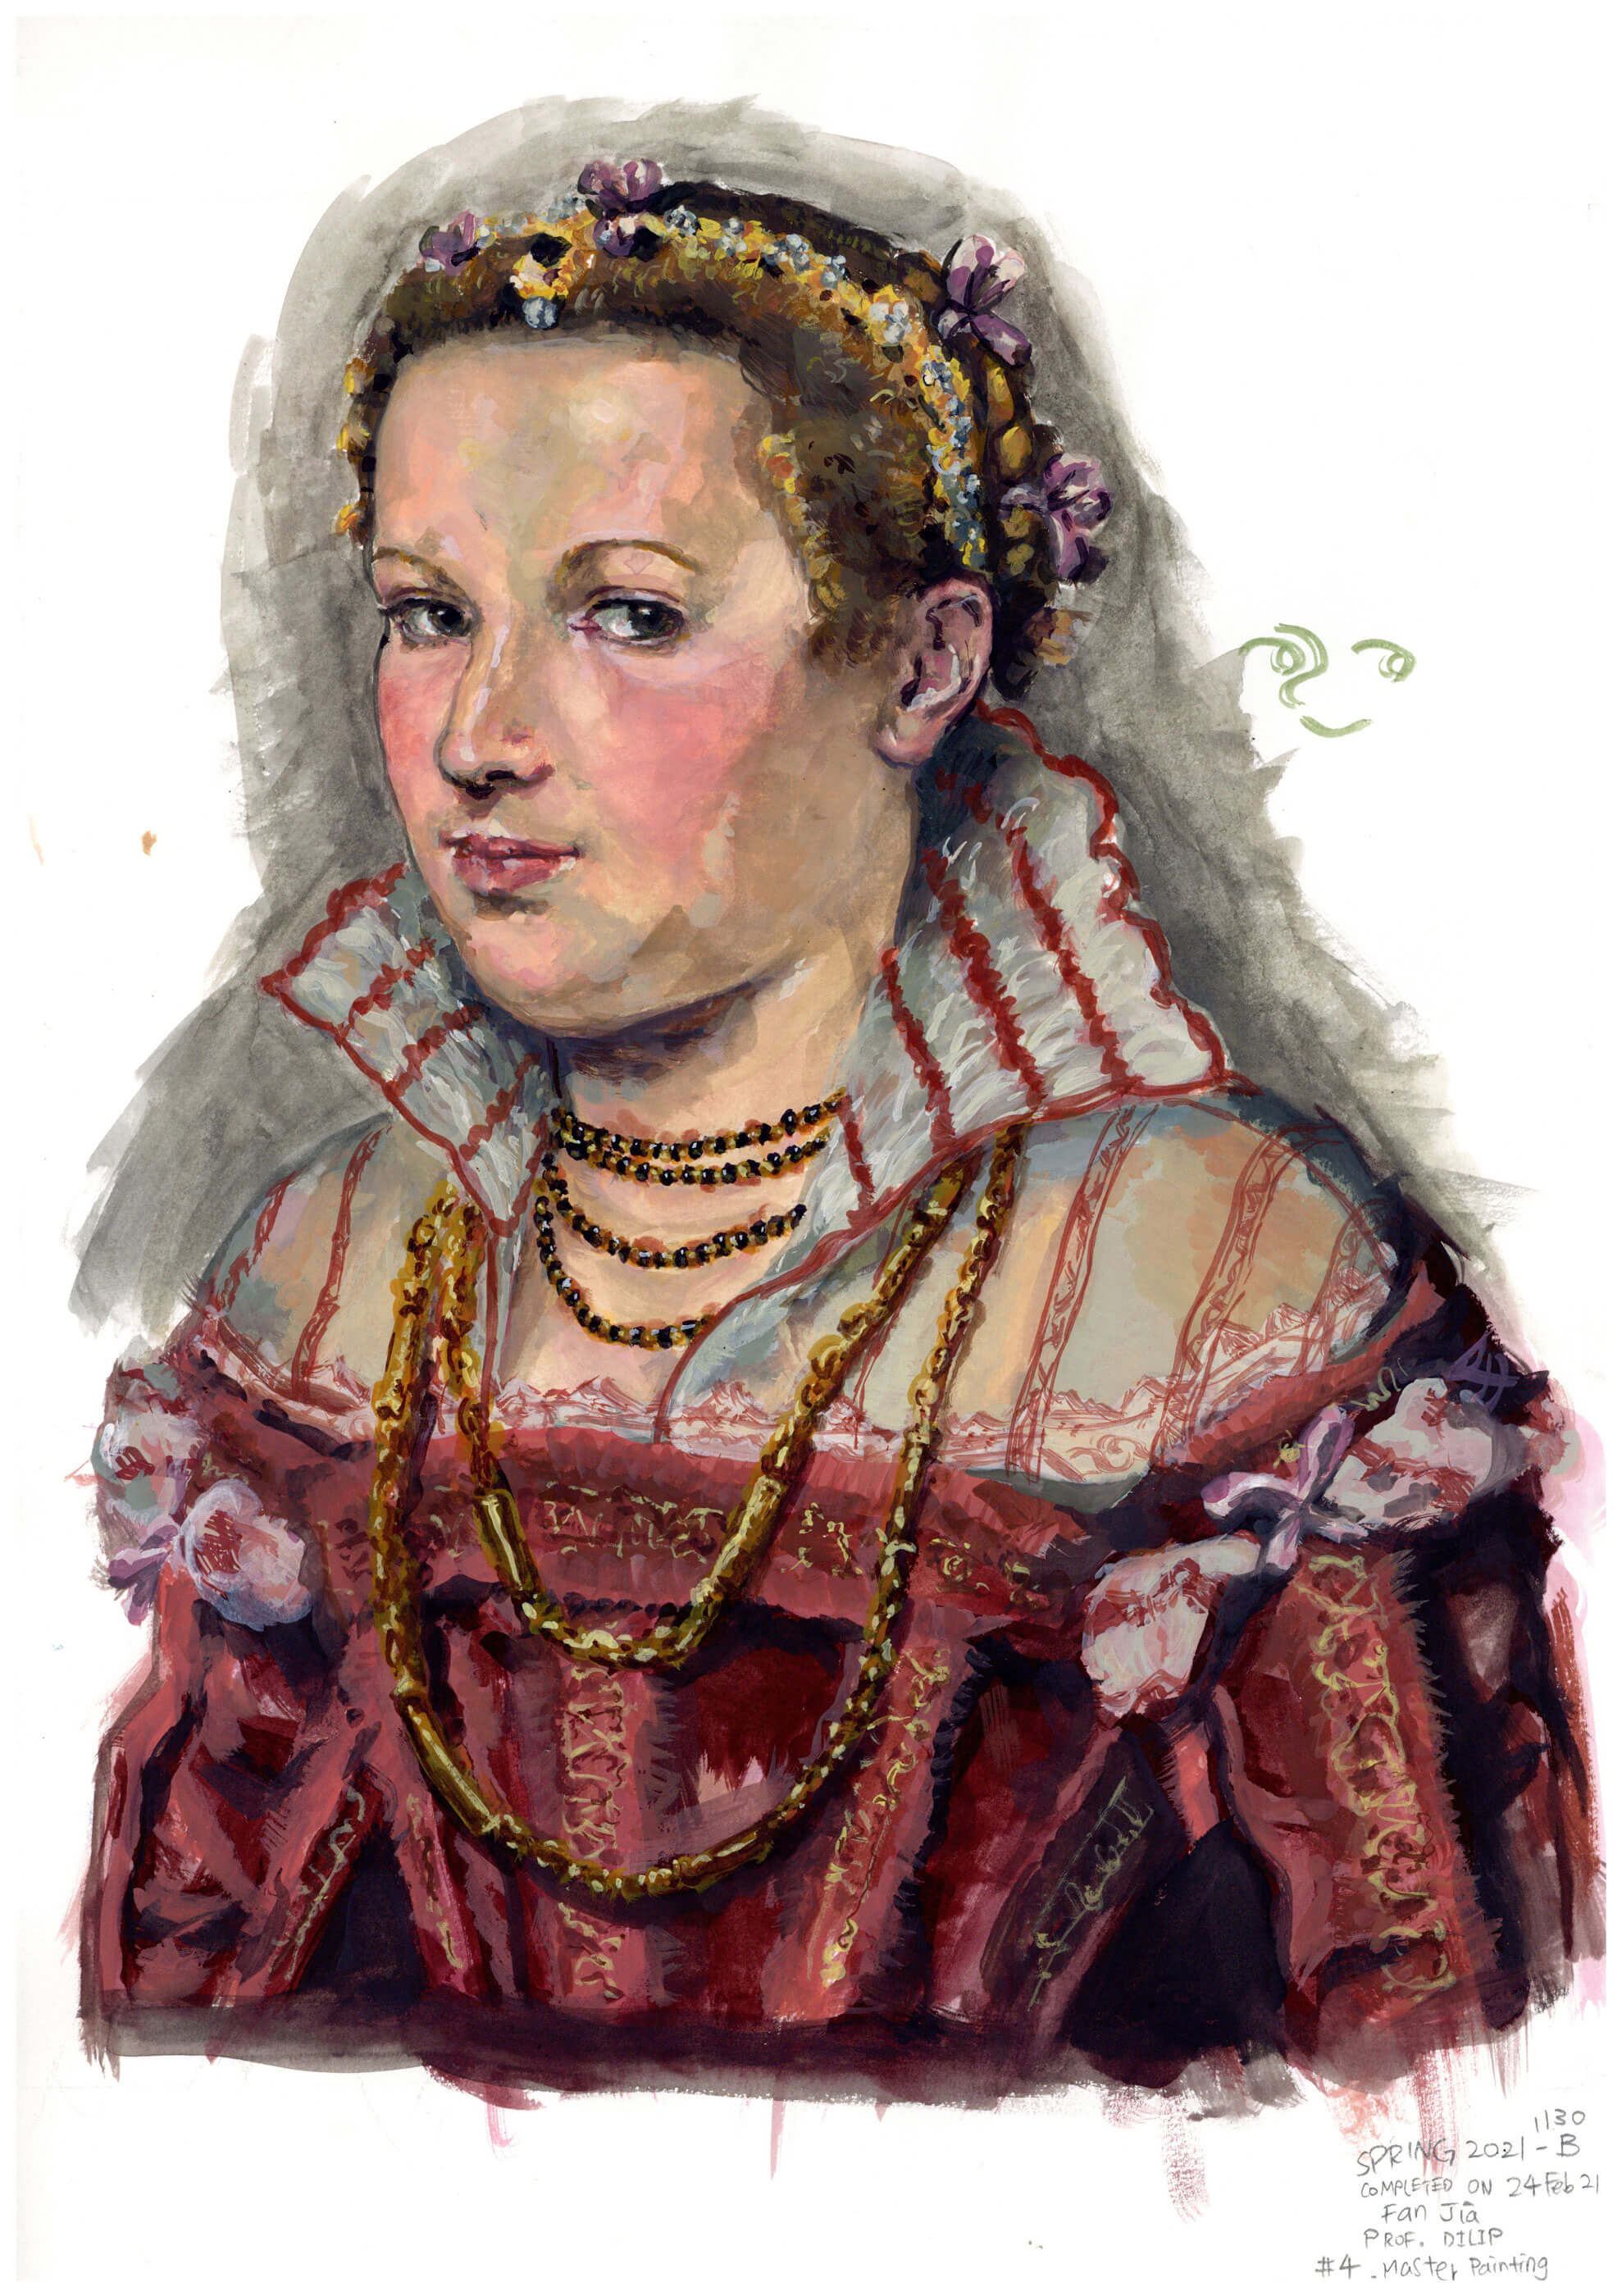 Portrait of a woman in Renaissance-era garb.